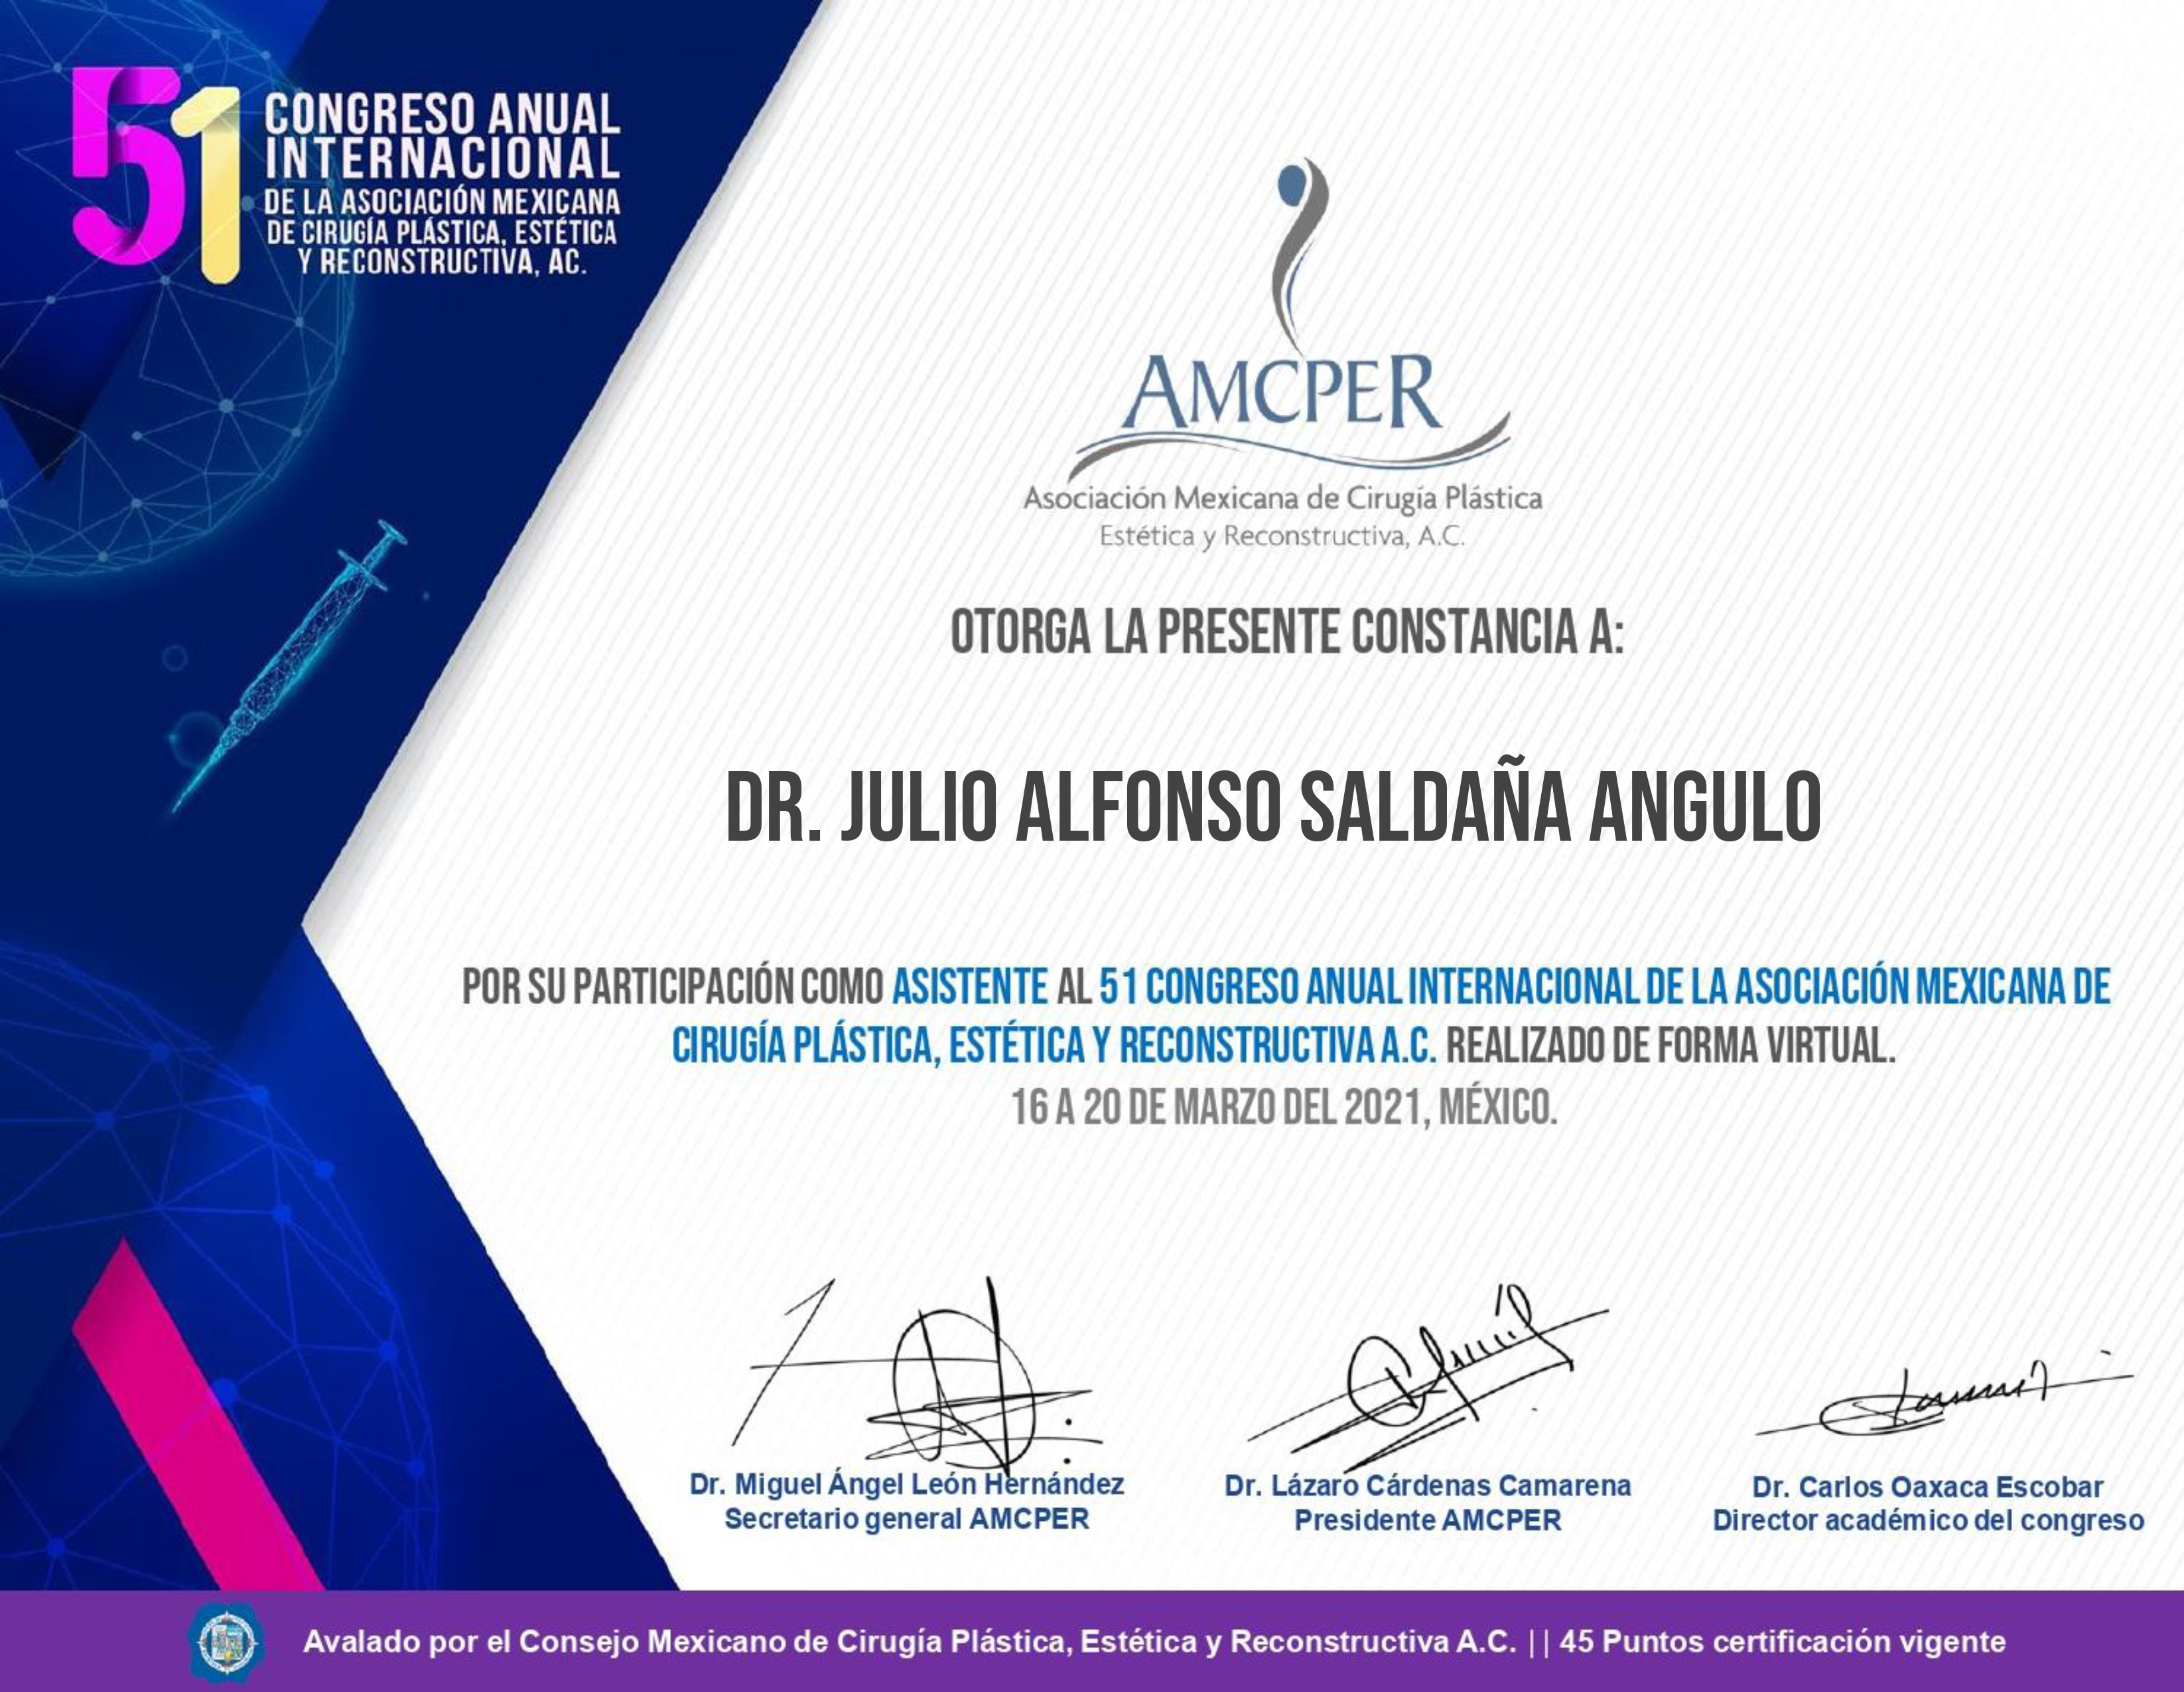 Congreso anual Internacional de la Asociación Mexicana de Cirugía Plástica, Estetica y Reconstructiva.